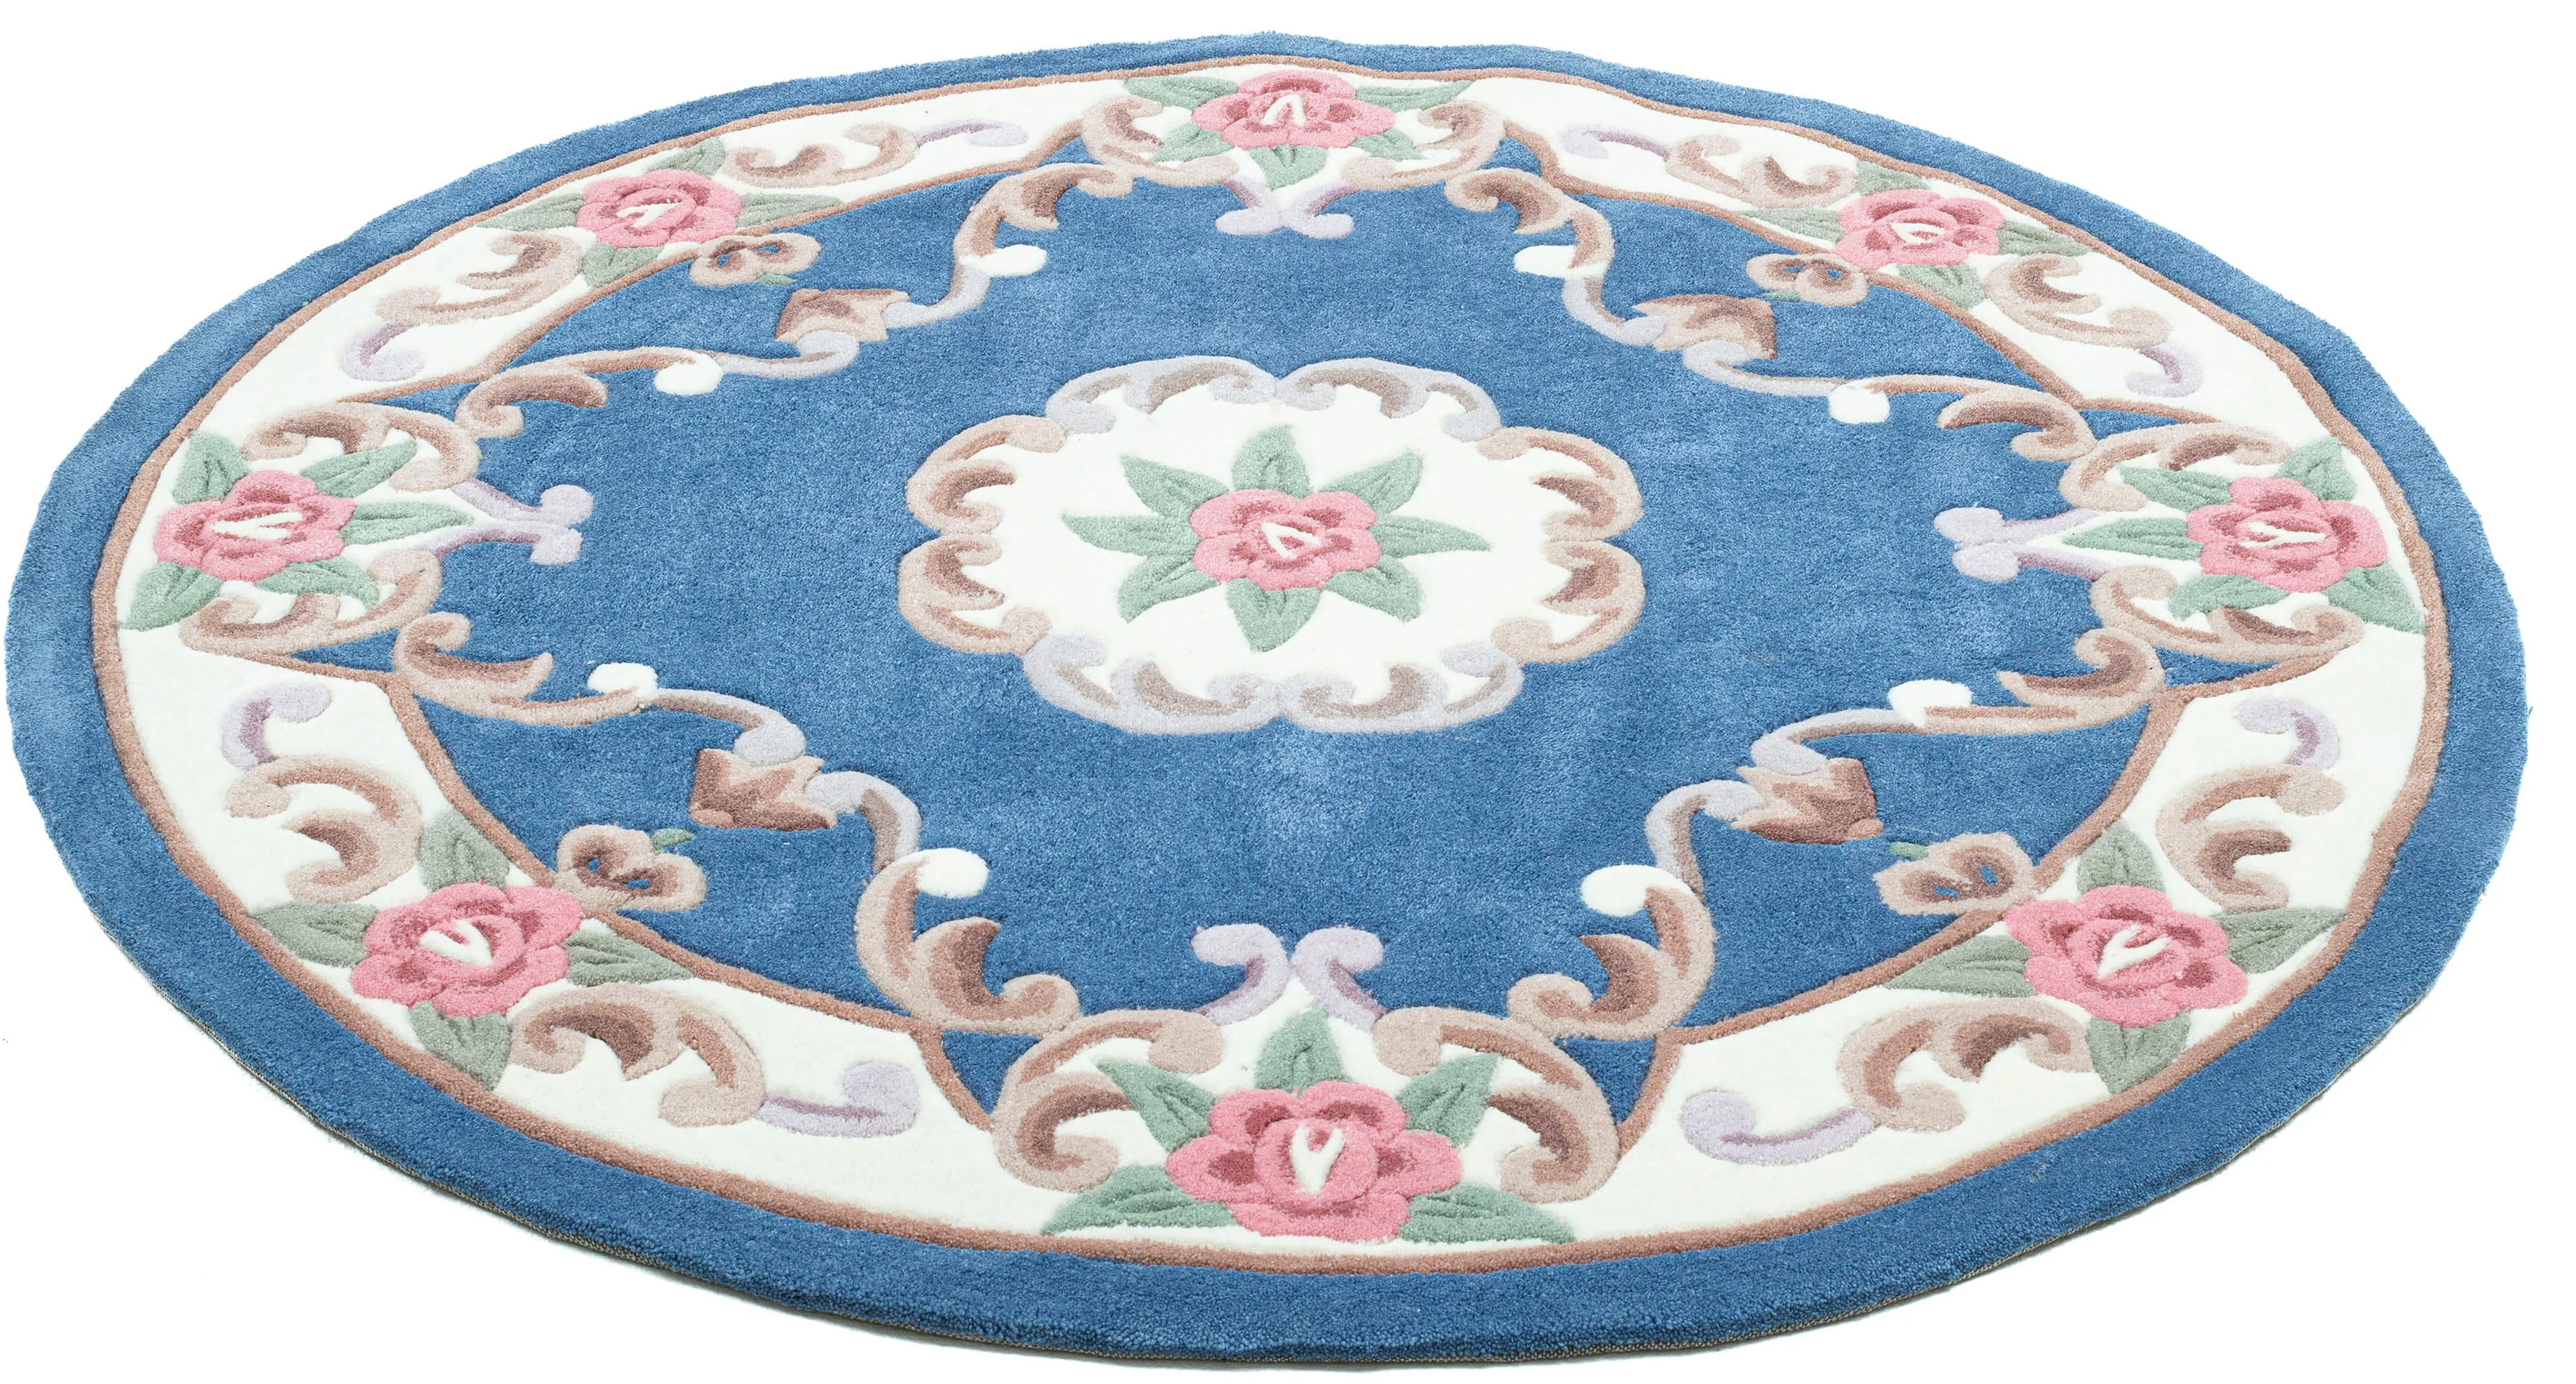 Teppich THEKO "Ming" Teppiche Gr. Ø 150 cm, 14 mm, 1 St., blau Orientalische Muster hochwertiges Acrylgarn, ideal im Wohnzimmer & Schlafzimmer